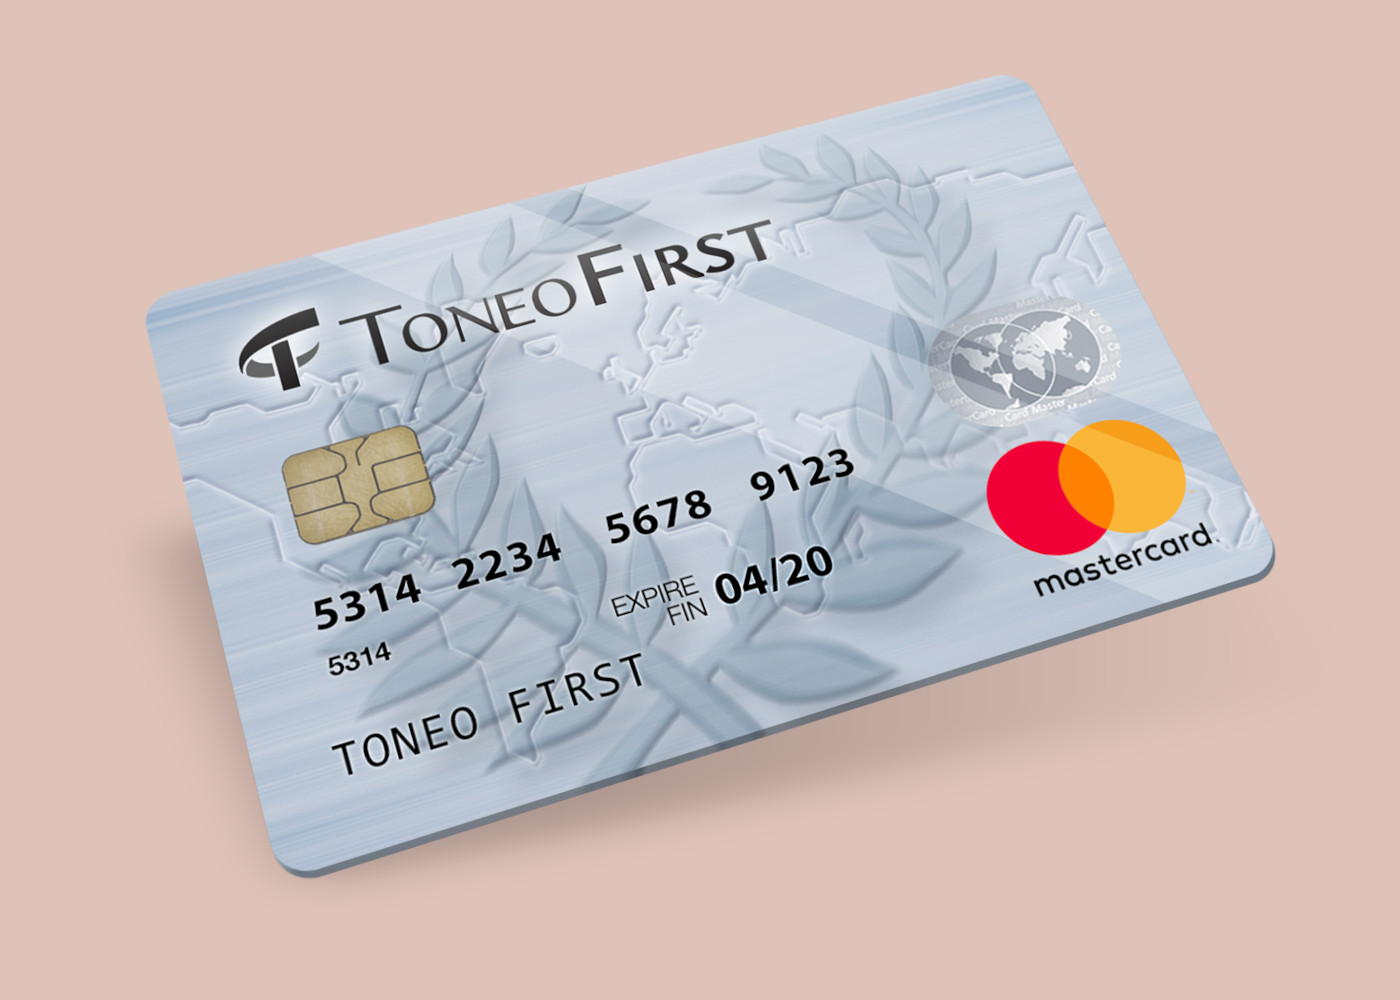 Toneo First Mastercard €30 Gift Card EU